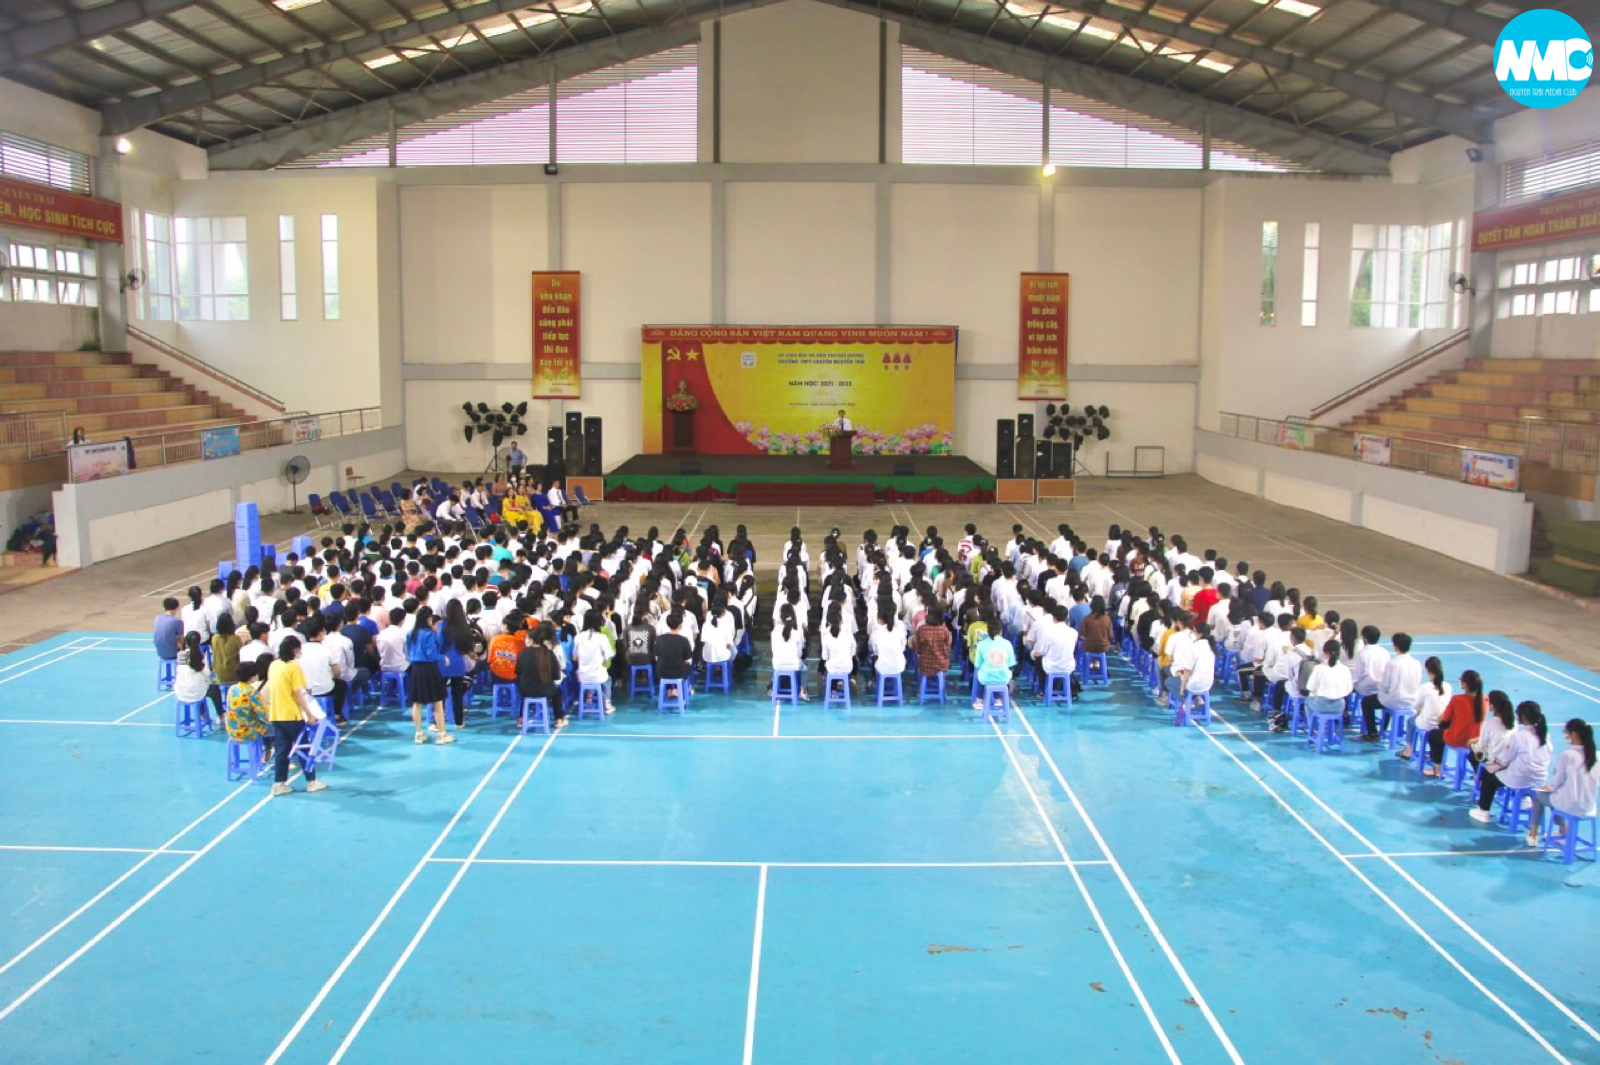 Rộn ràng không khí buổi lễ nhập học của Tân học sinh khoá 2022-2025 tại trường THPT Chuyên Nguyễn Trãi